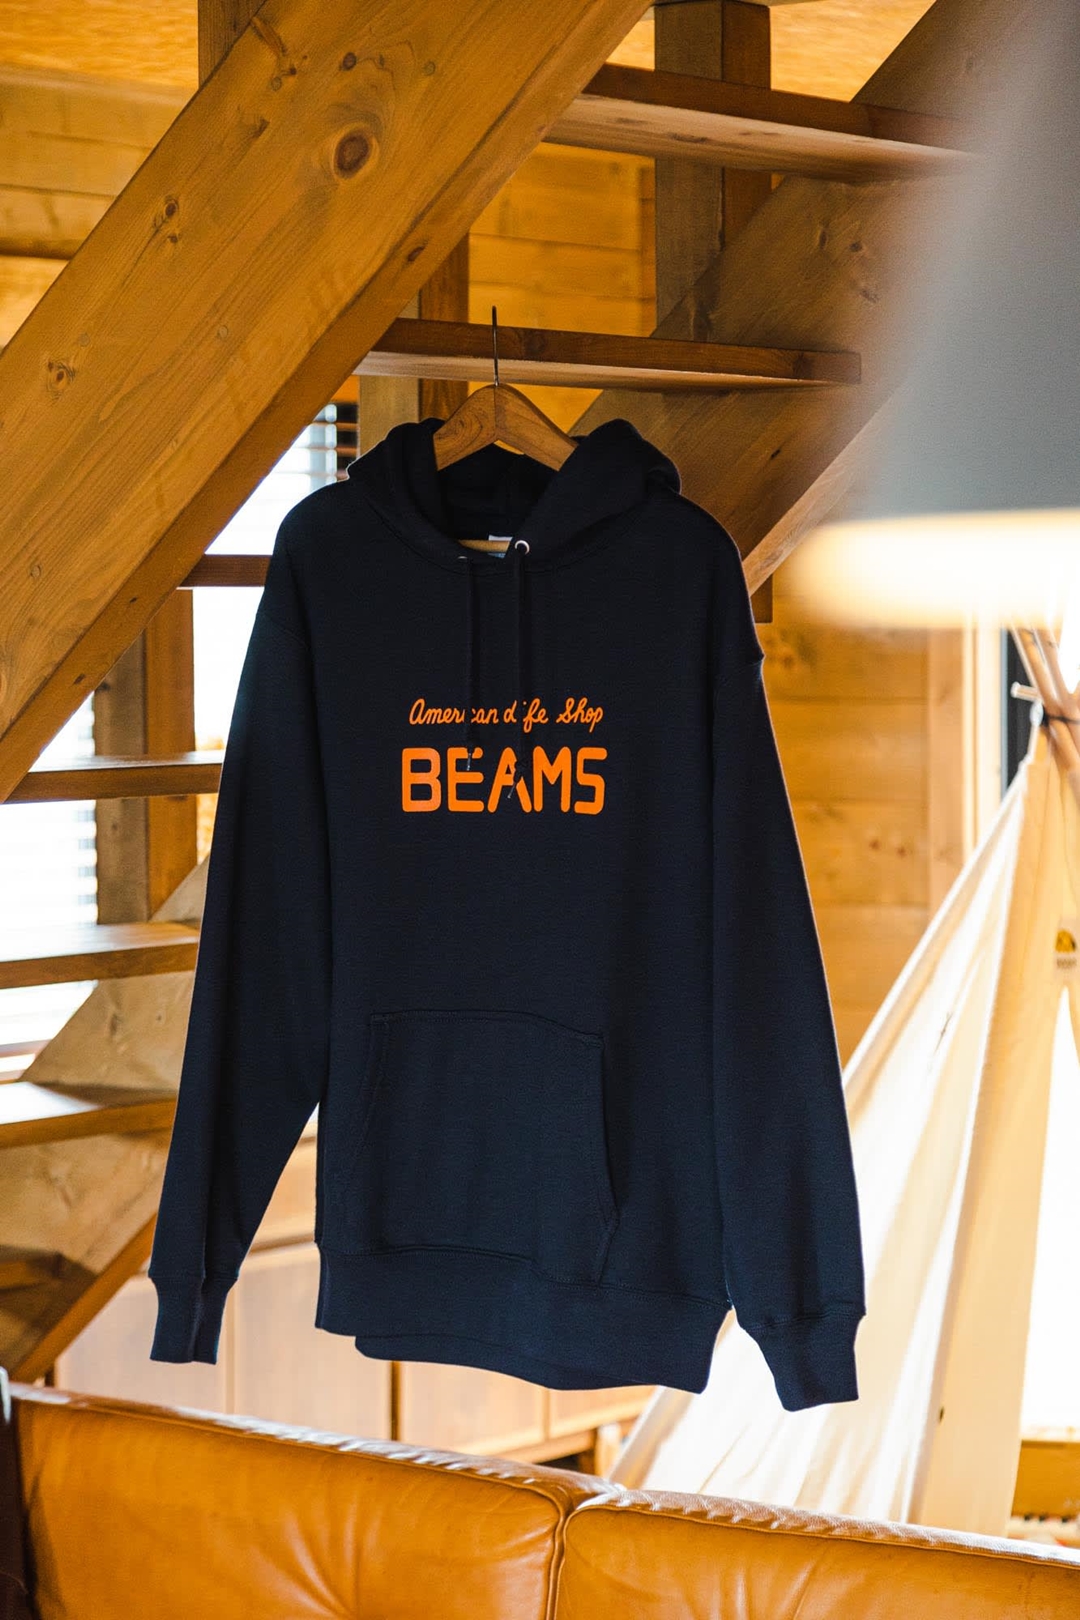 【45周年記念】BEAMSの初代ロゴ「American Life Shop BEAMS」を使用したアイテムが11/13から順次発売 (ビームス 45th)